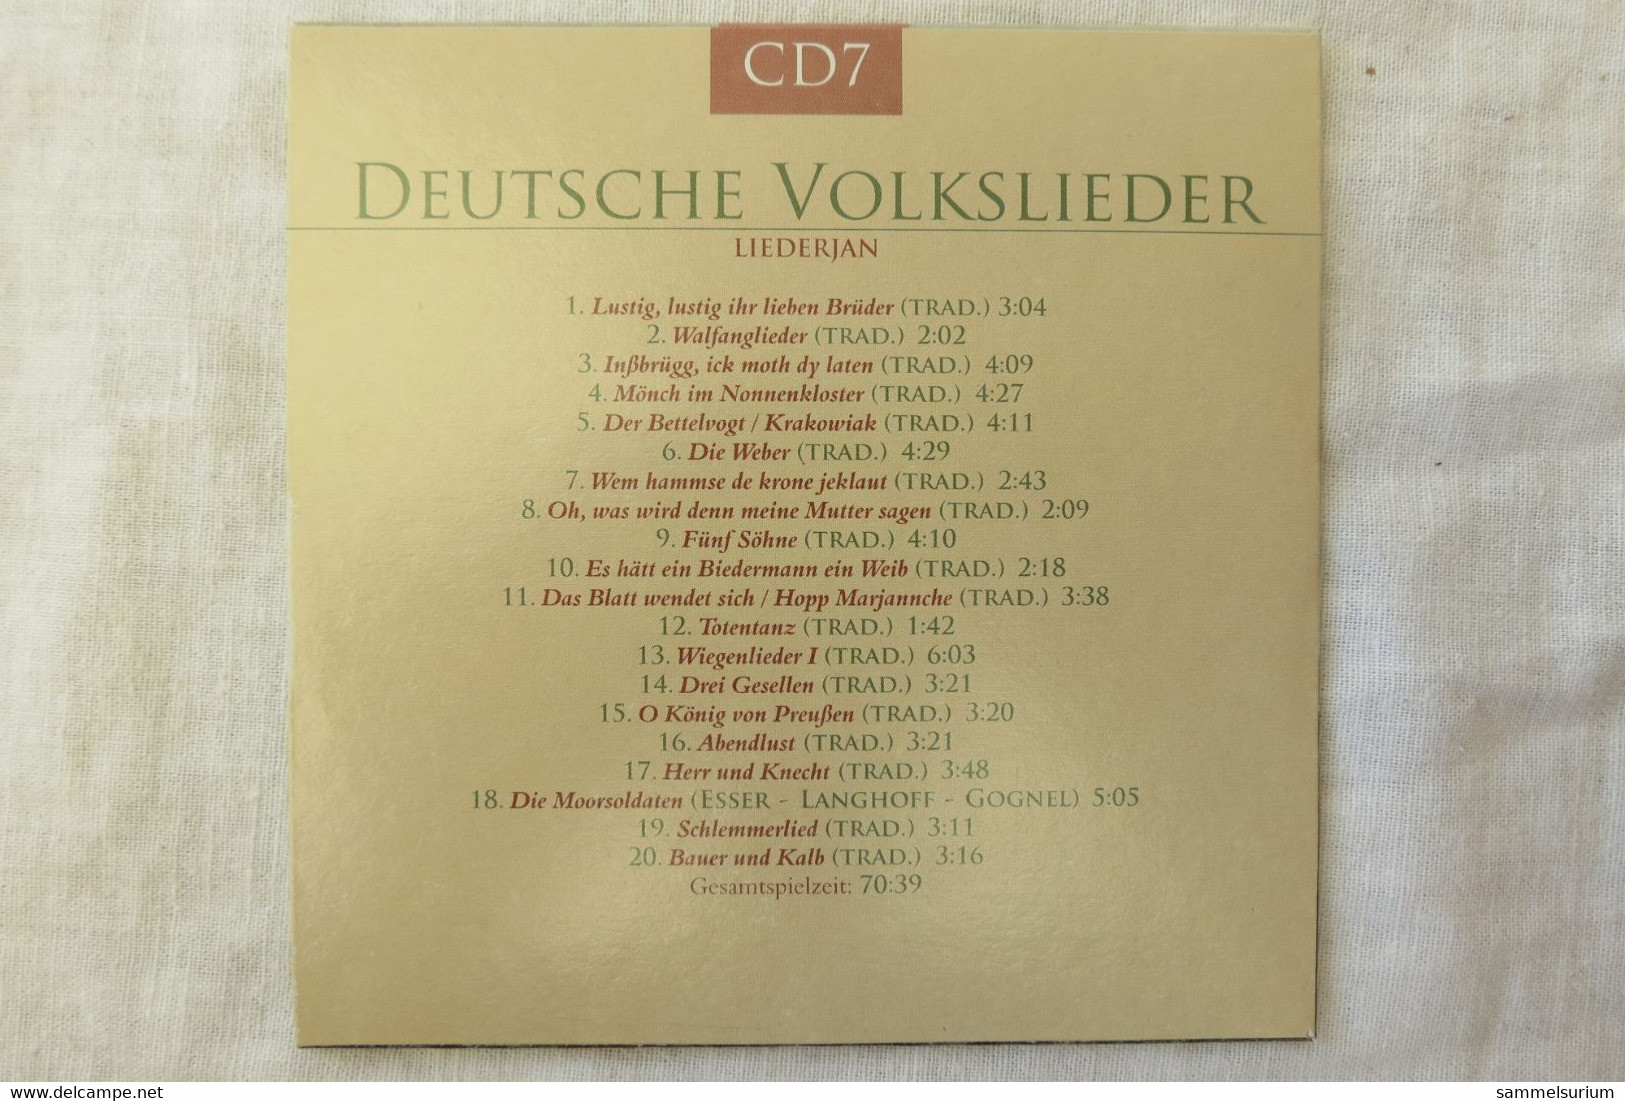 10 CDs Set "Deutsche Volkslieder" div. Interpreten